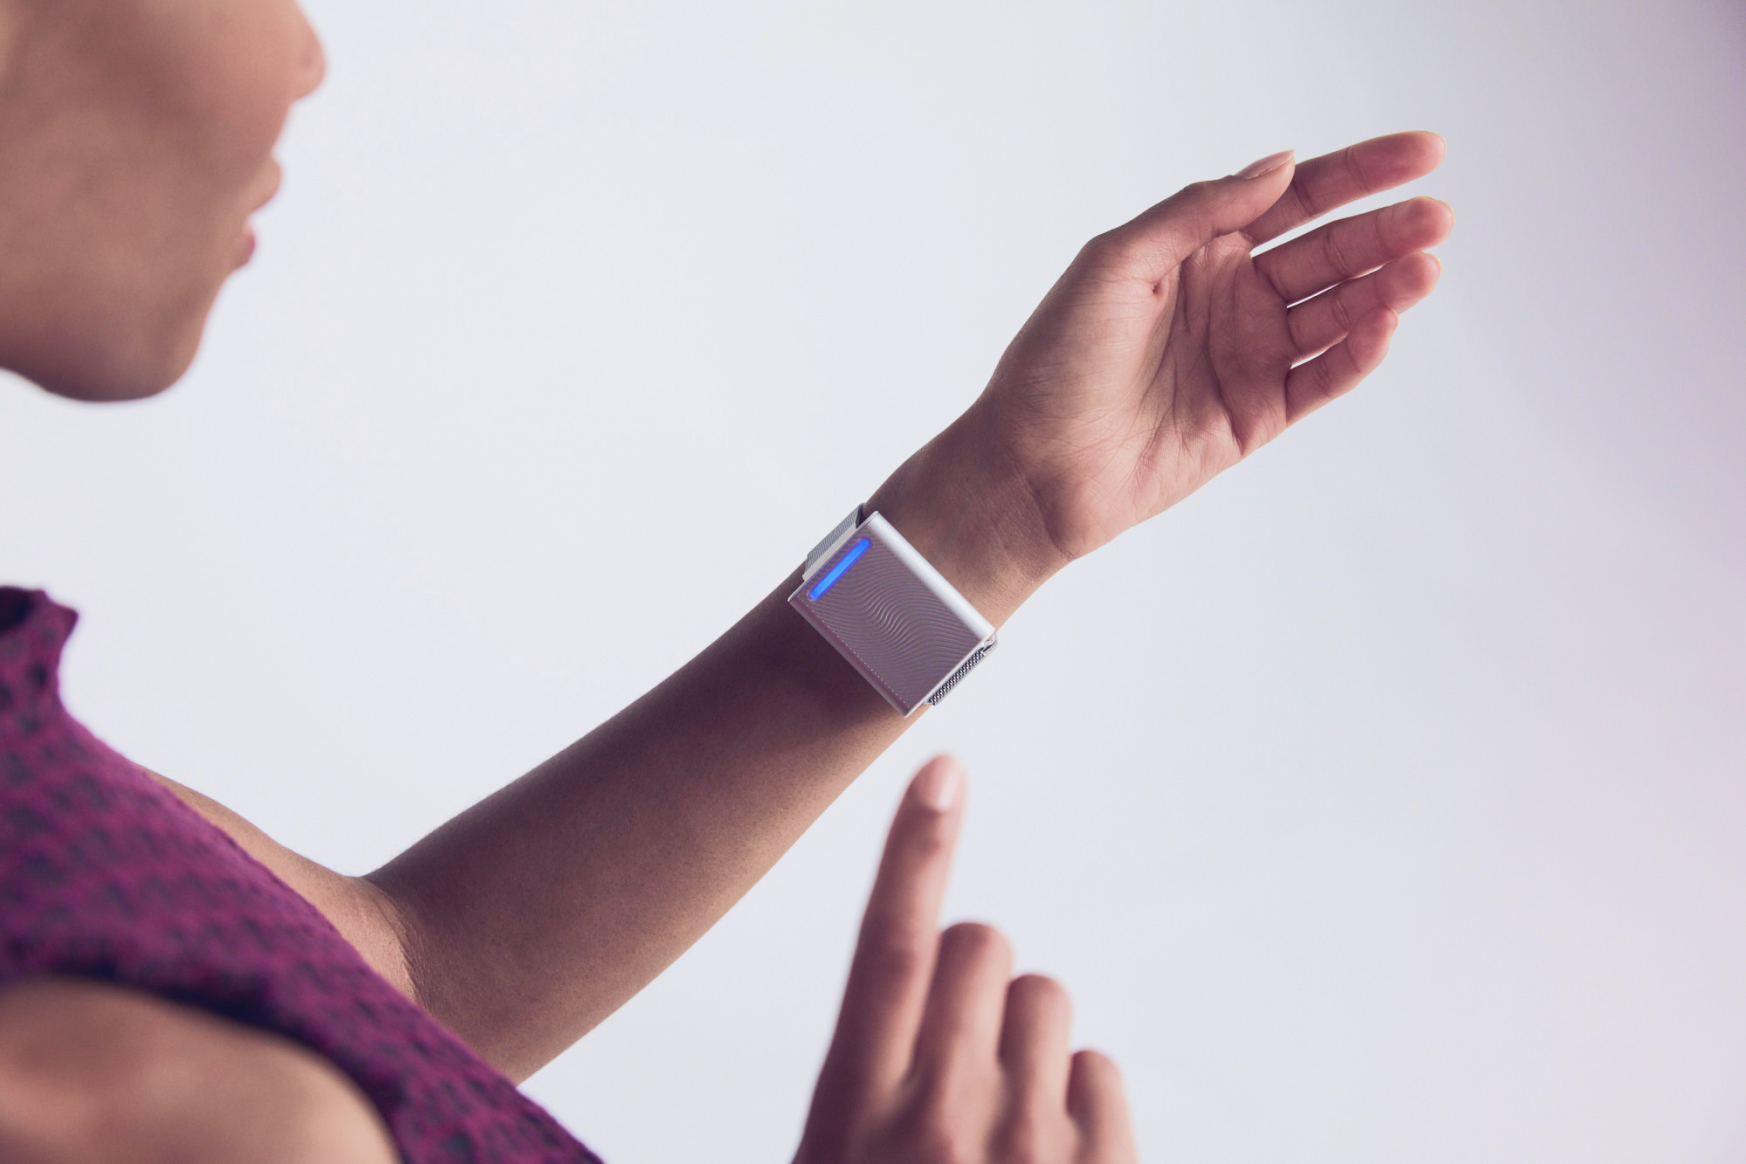 Embr Wave is a bracelet that controls your body temperature - GadgetMatch